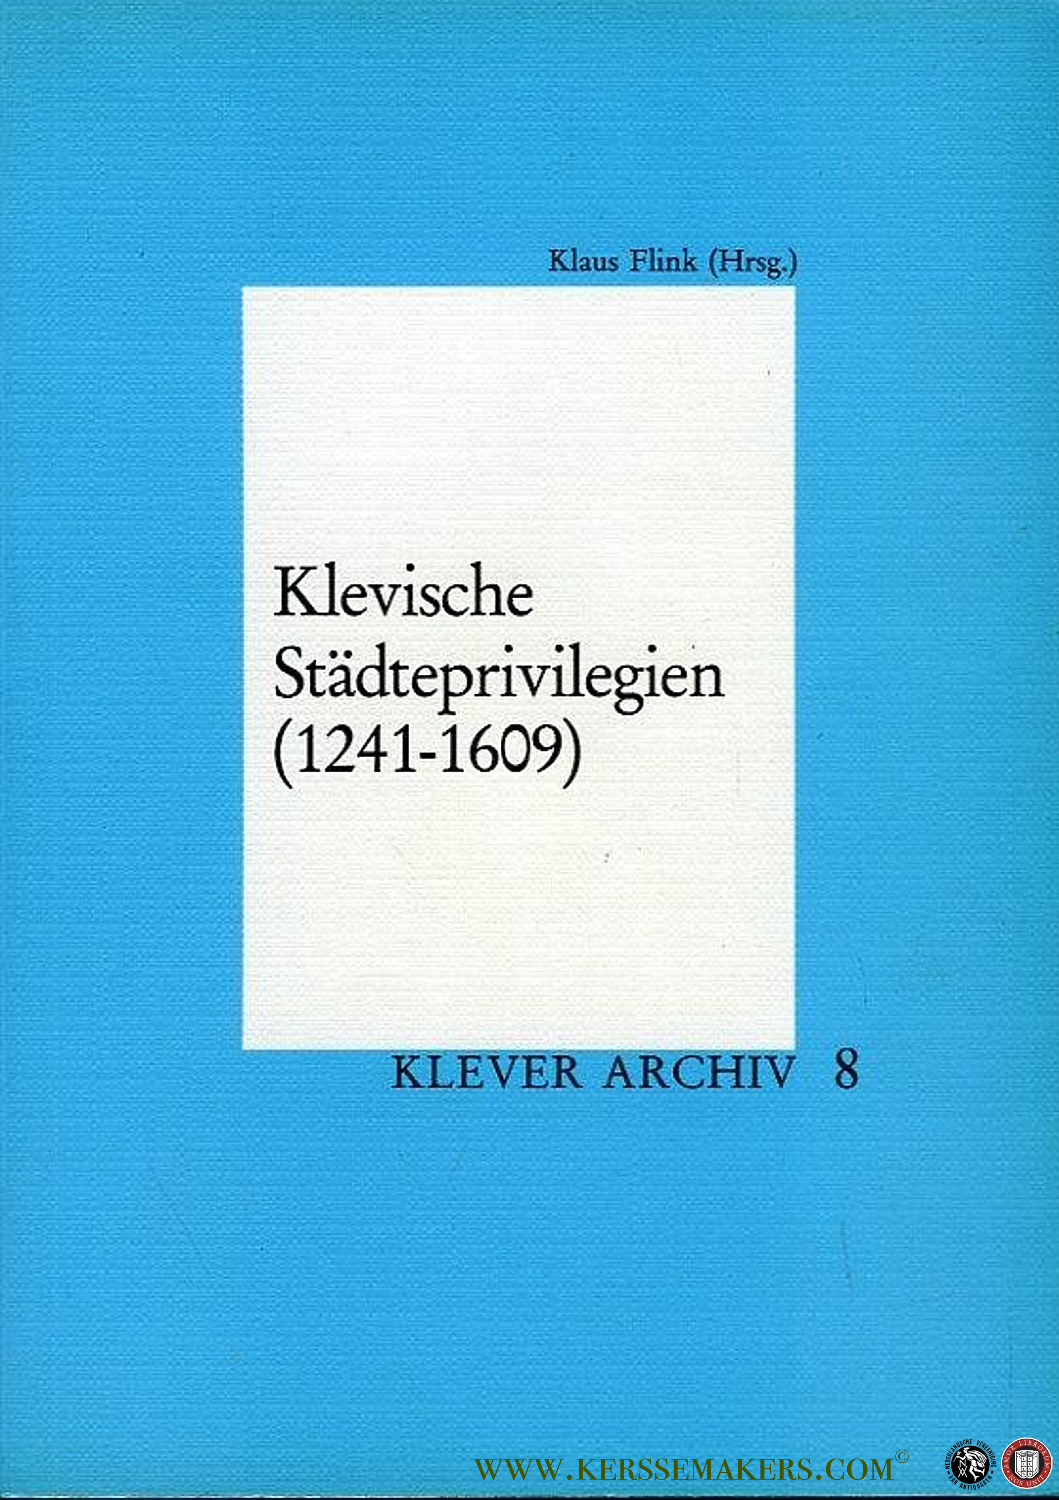 Klevische Städteprivilegien (1241-1609). - FLINK, Klaus (Hrsg.)